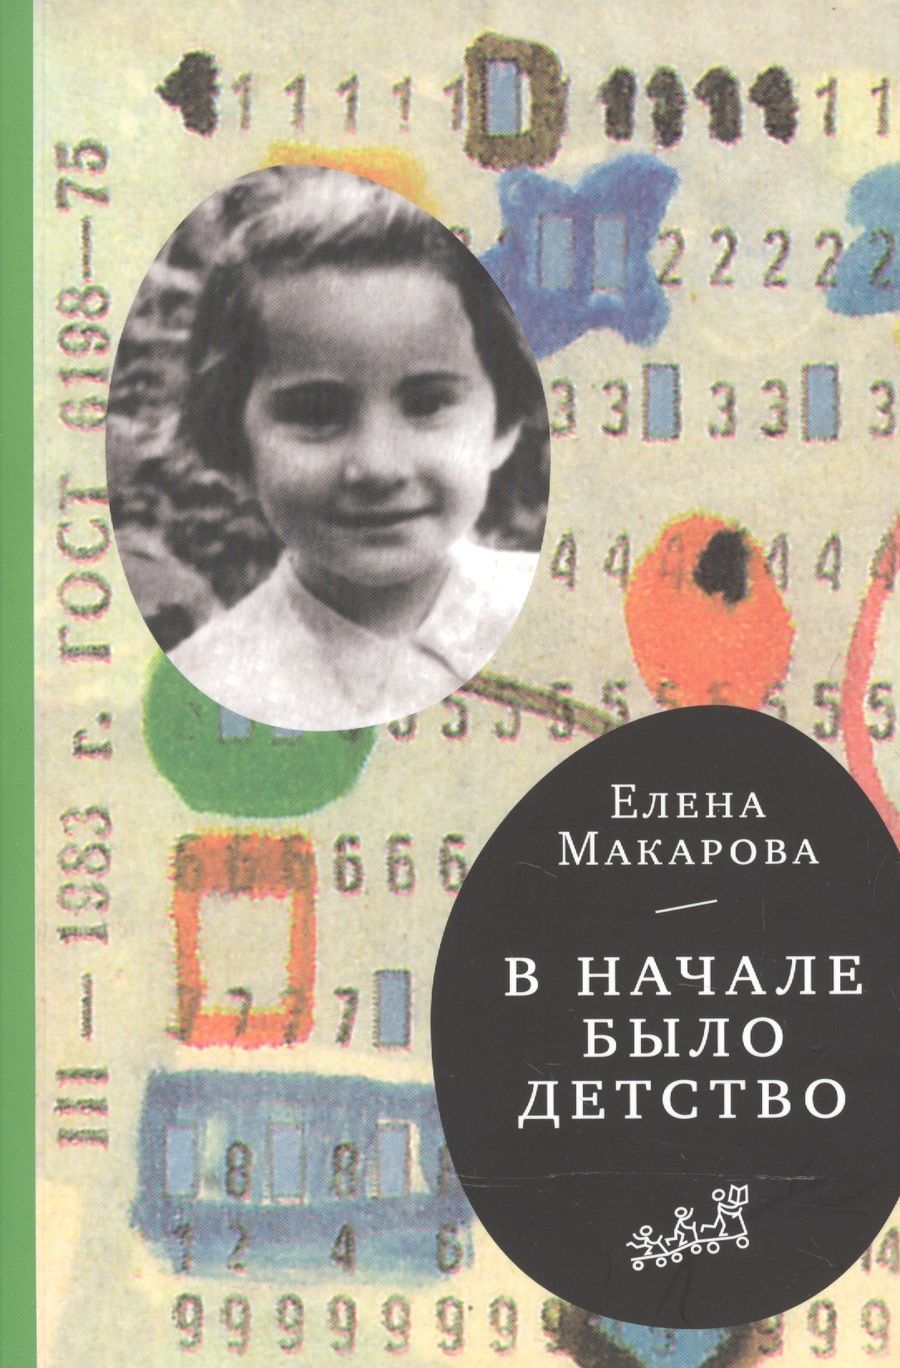 Обложка книги "Елена Макарова: В начале было детство (3-е издание)"